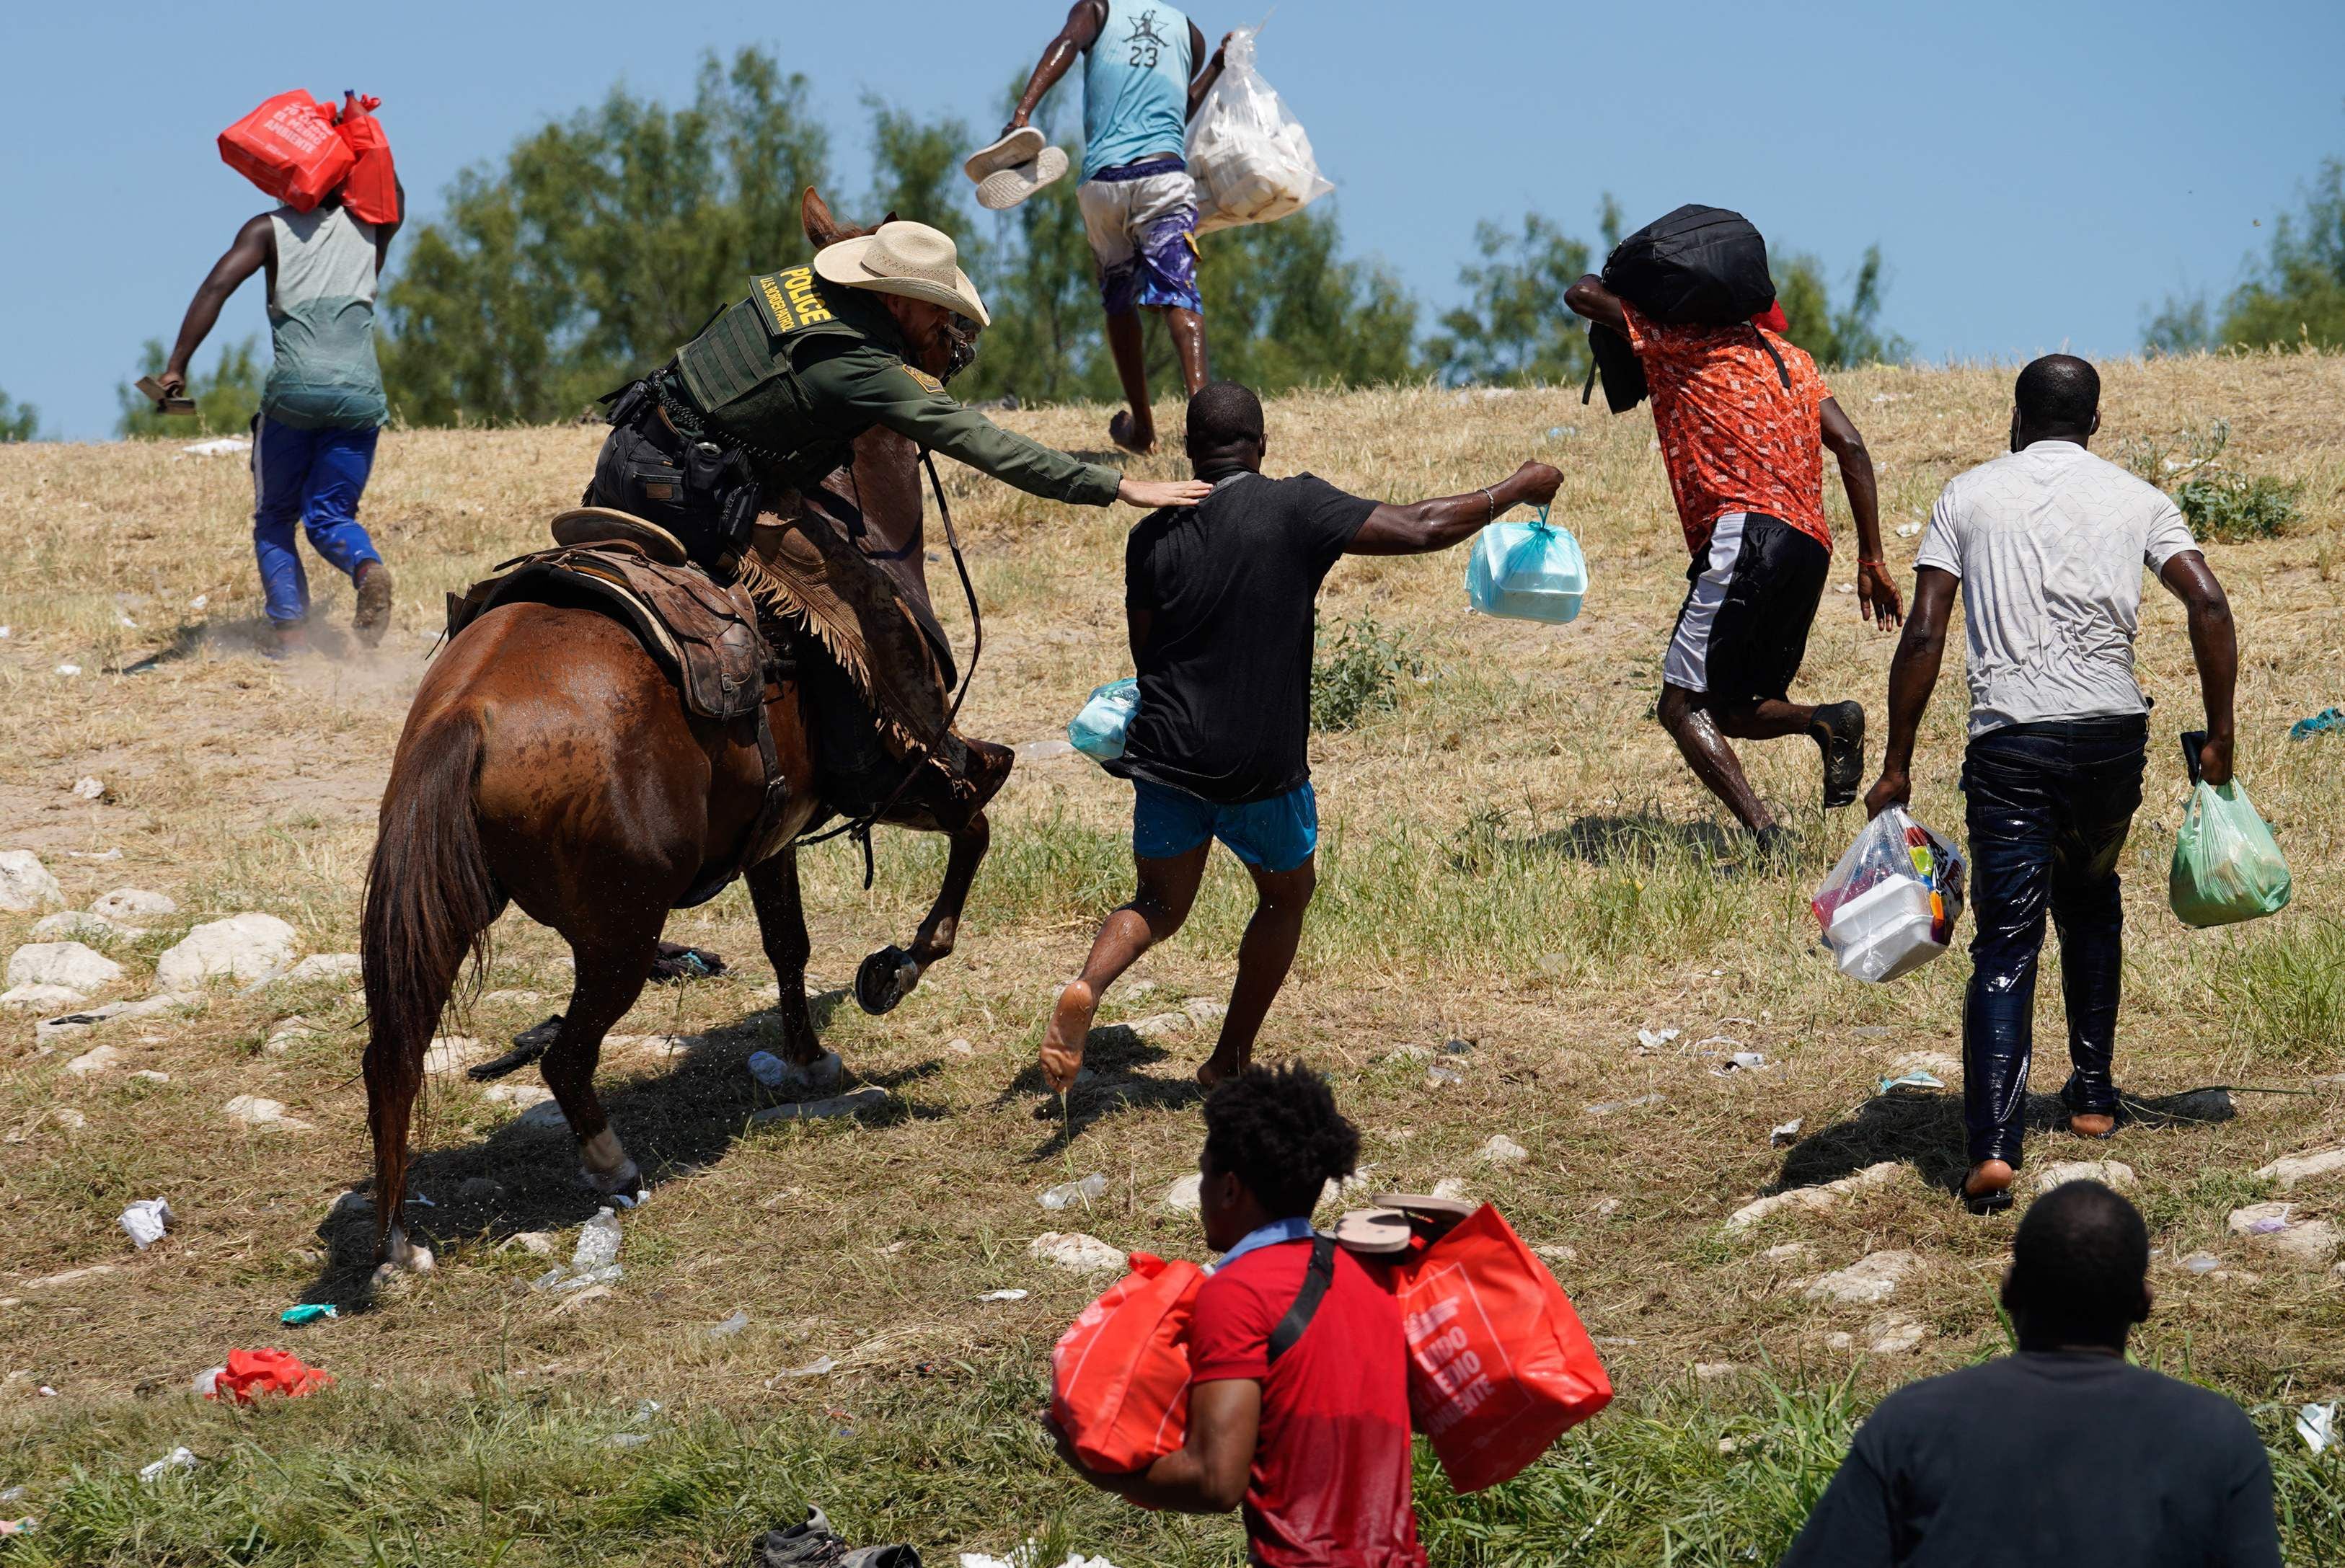 Un agente de la Patrulla Fronteriza de los Estados Unidos a caballo intenta evitar que un migrante haitiano ingrese a un campamento en las orillas del Río Grande cerca del Puente Internacional Acuña del Río en Del Río, Texas, el 19 de septiembre de 2021. (Foto de PAUL RATJE / AFP)